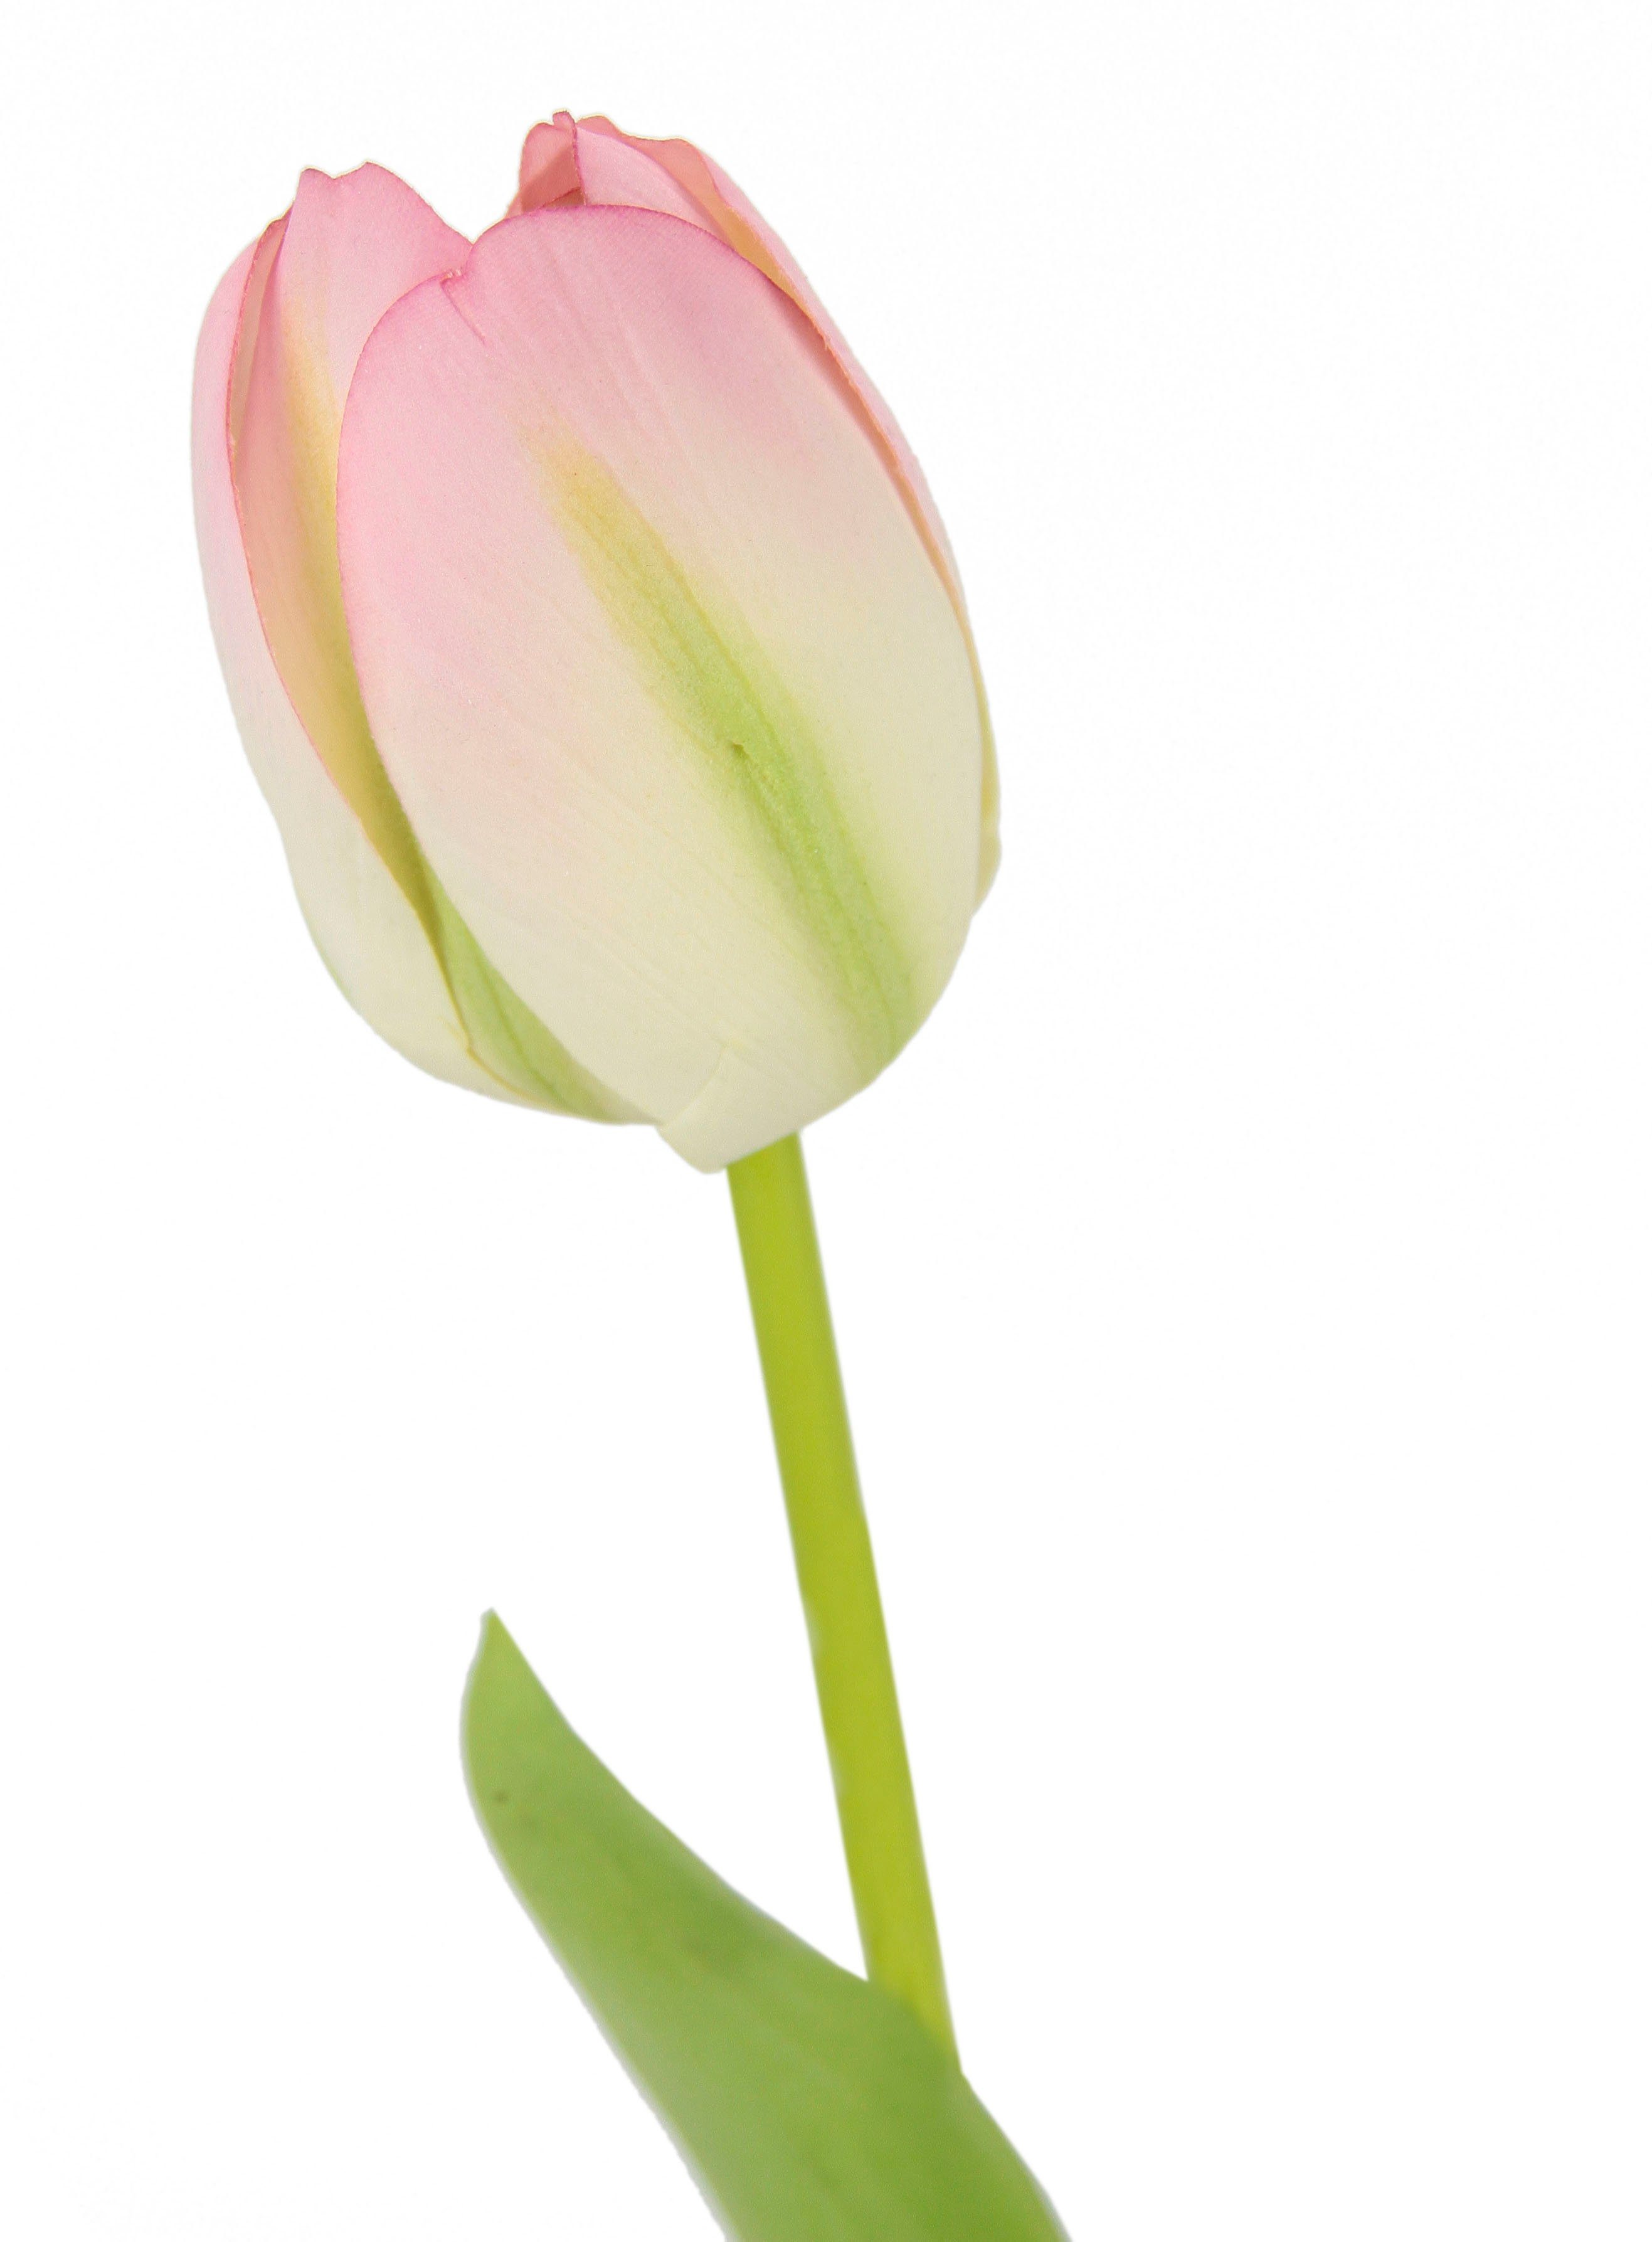 weiß/rosa 5er 67 I.GE.A., Tulpenknospen, Set künstliche Touch Real cm, Kunstblumen, Kunstblume Höhe Stielblume Tulpen,